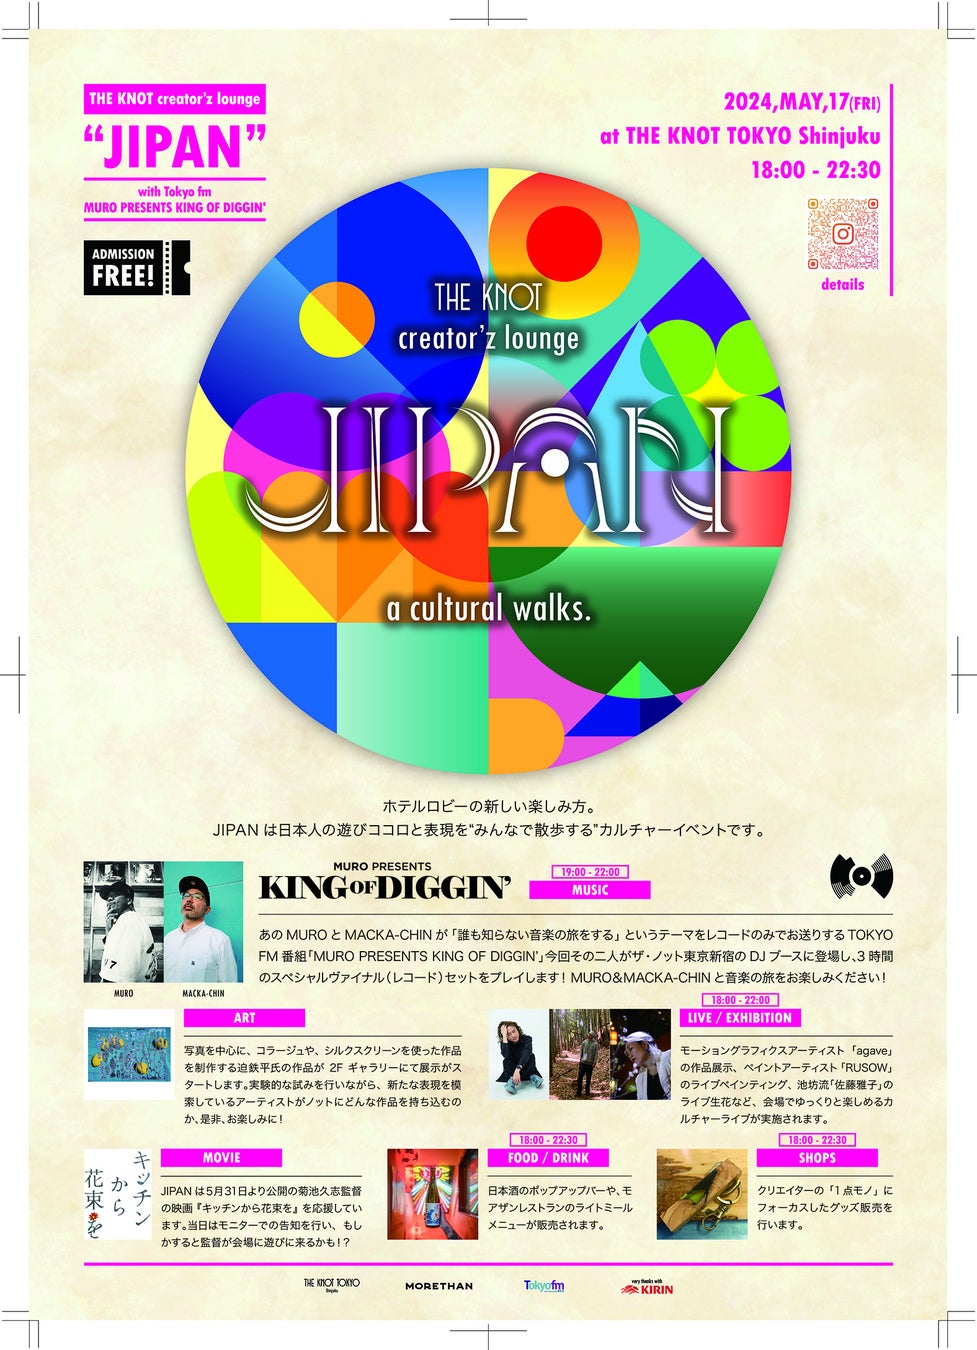 ザ・ノット東京新宿にて”ホテルロビーの新しい楽しみ方”を提案するカルチャーイベント【JIPAN ジパン】が5/17(金）に実施予定。東京FM「King of diggin’」よりDJ MUROが出演！